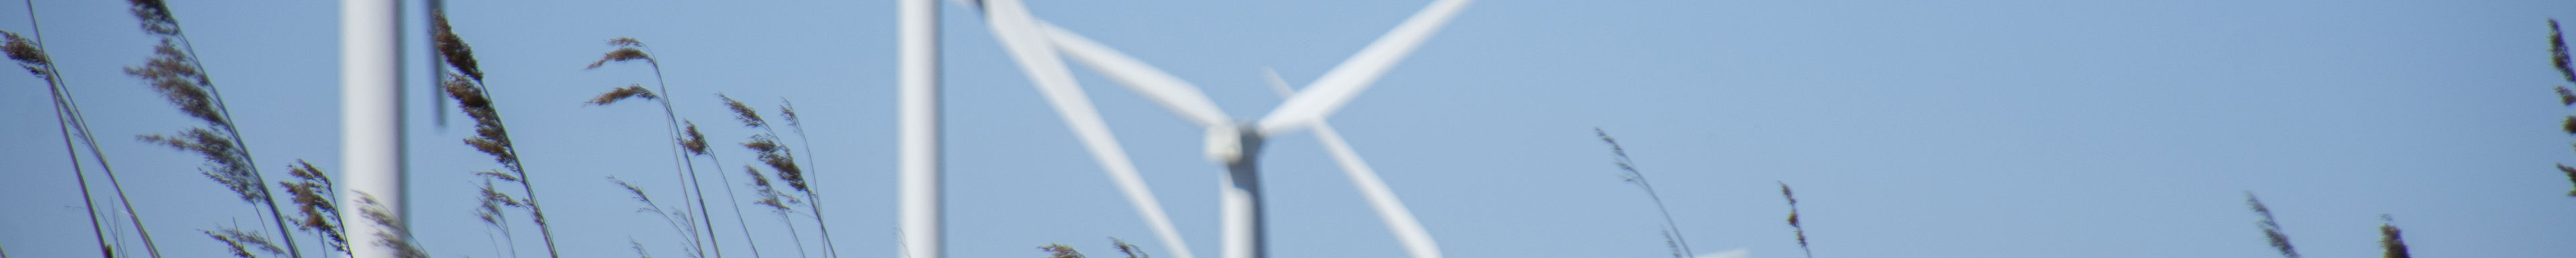 Close-up van lang gras met een rij windmolens op de achtergrond